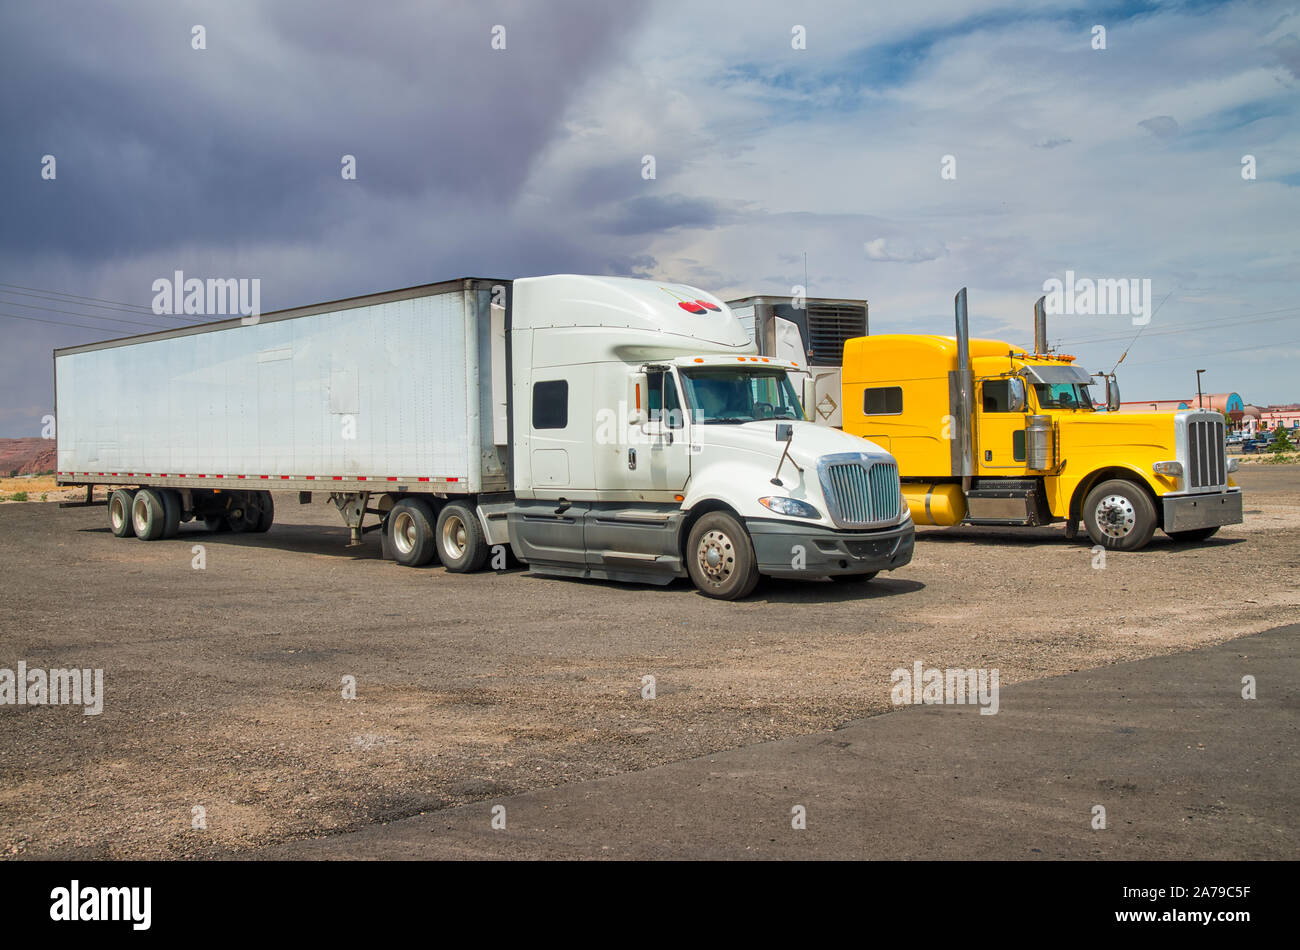 Les gros camions colorés stationné dans la campagne. Vacances, Voyages et vacances Banque D'Images